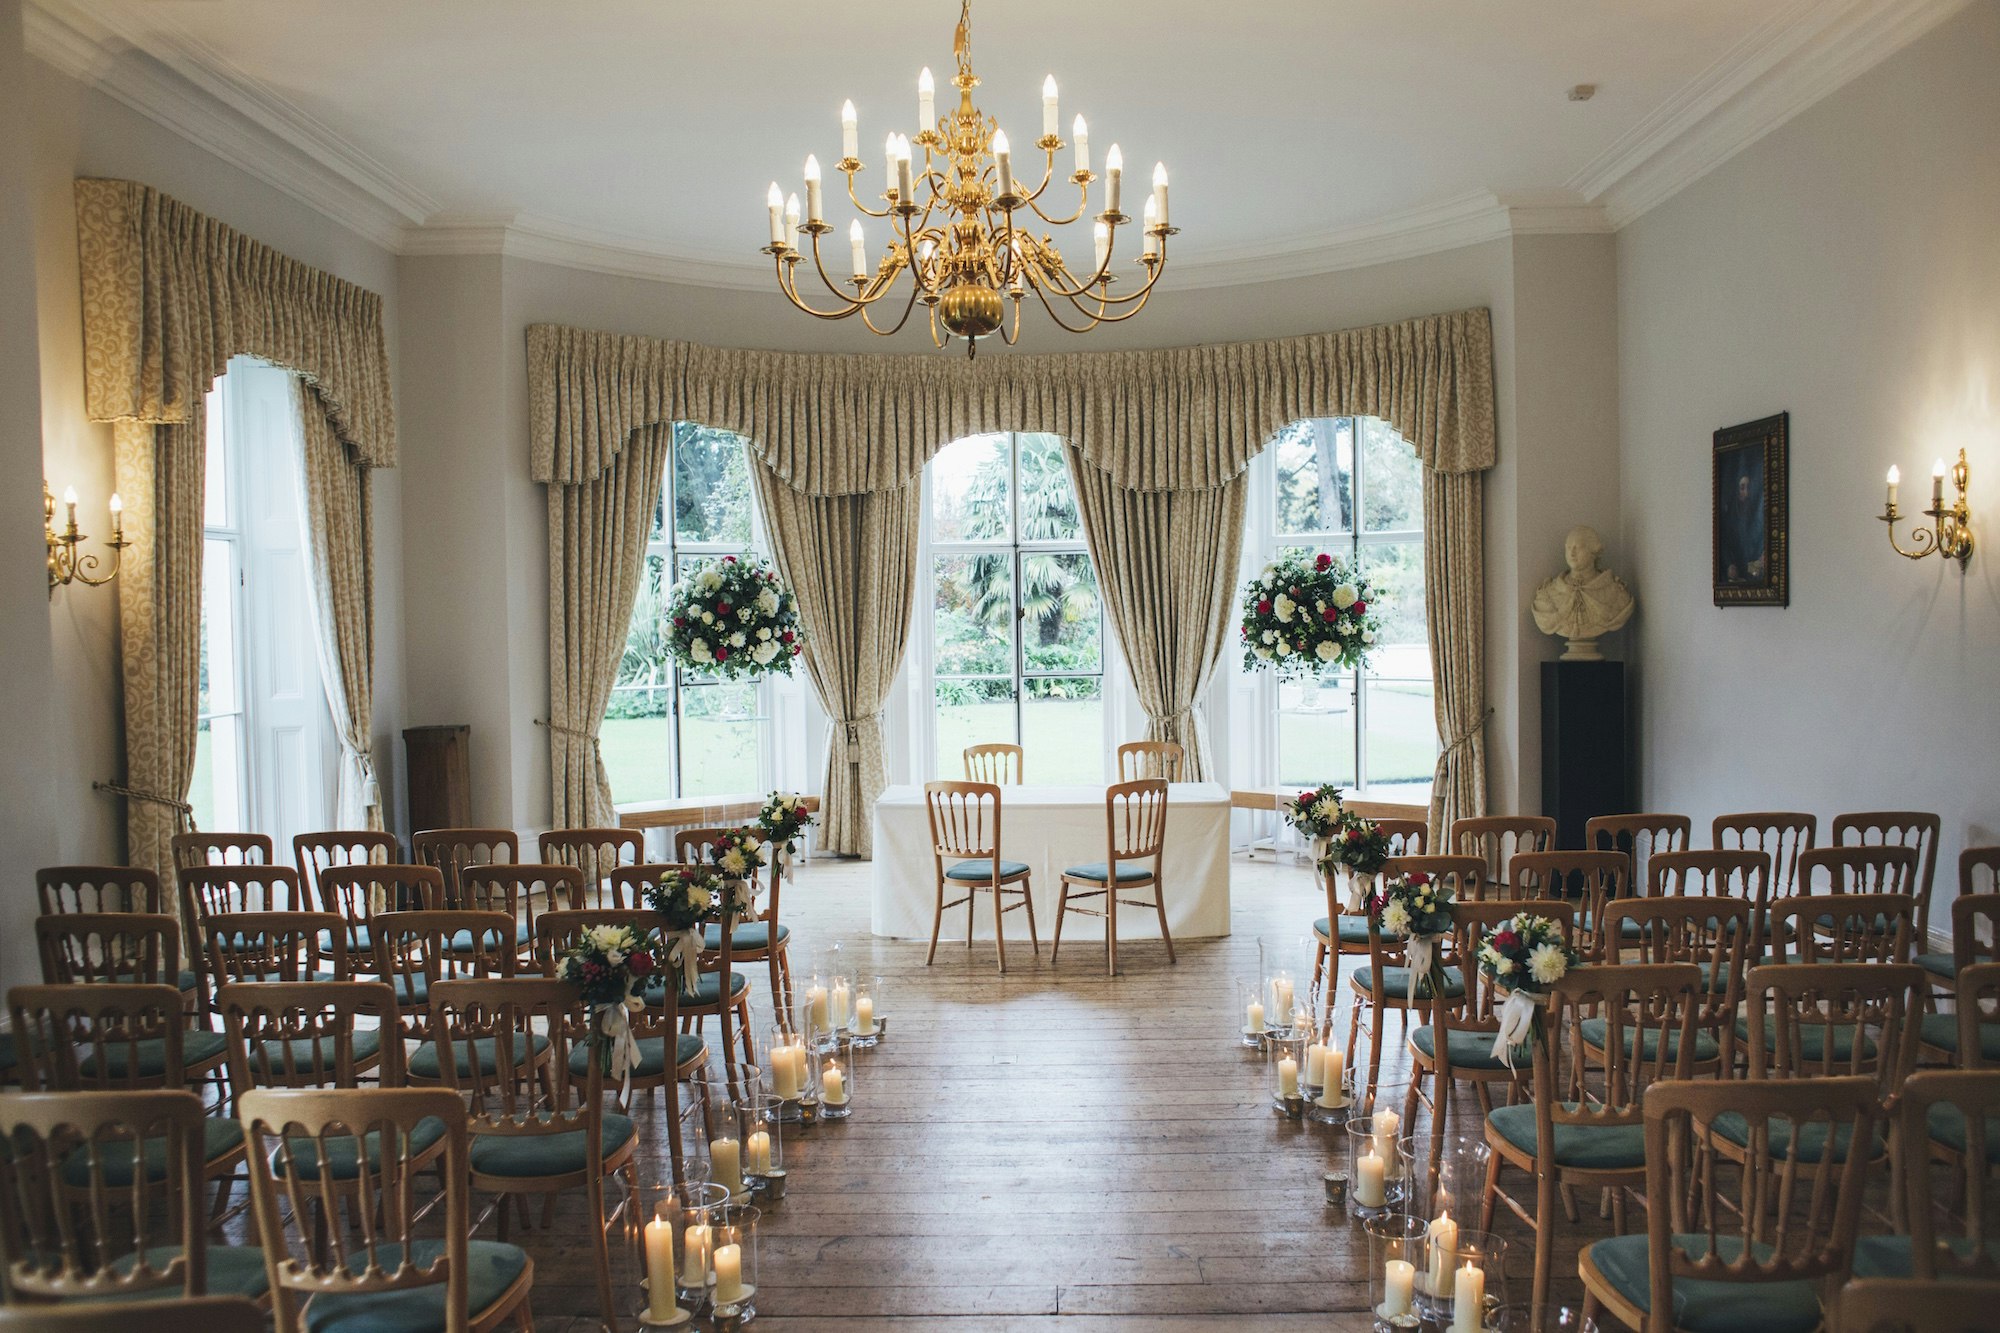 Intemate Wedding Venues in London - Kew Gardens